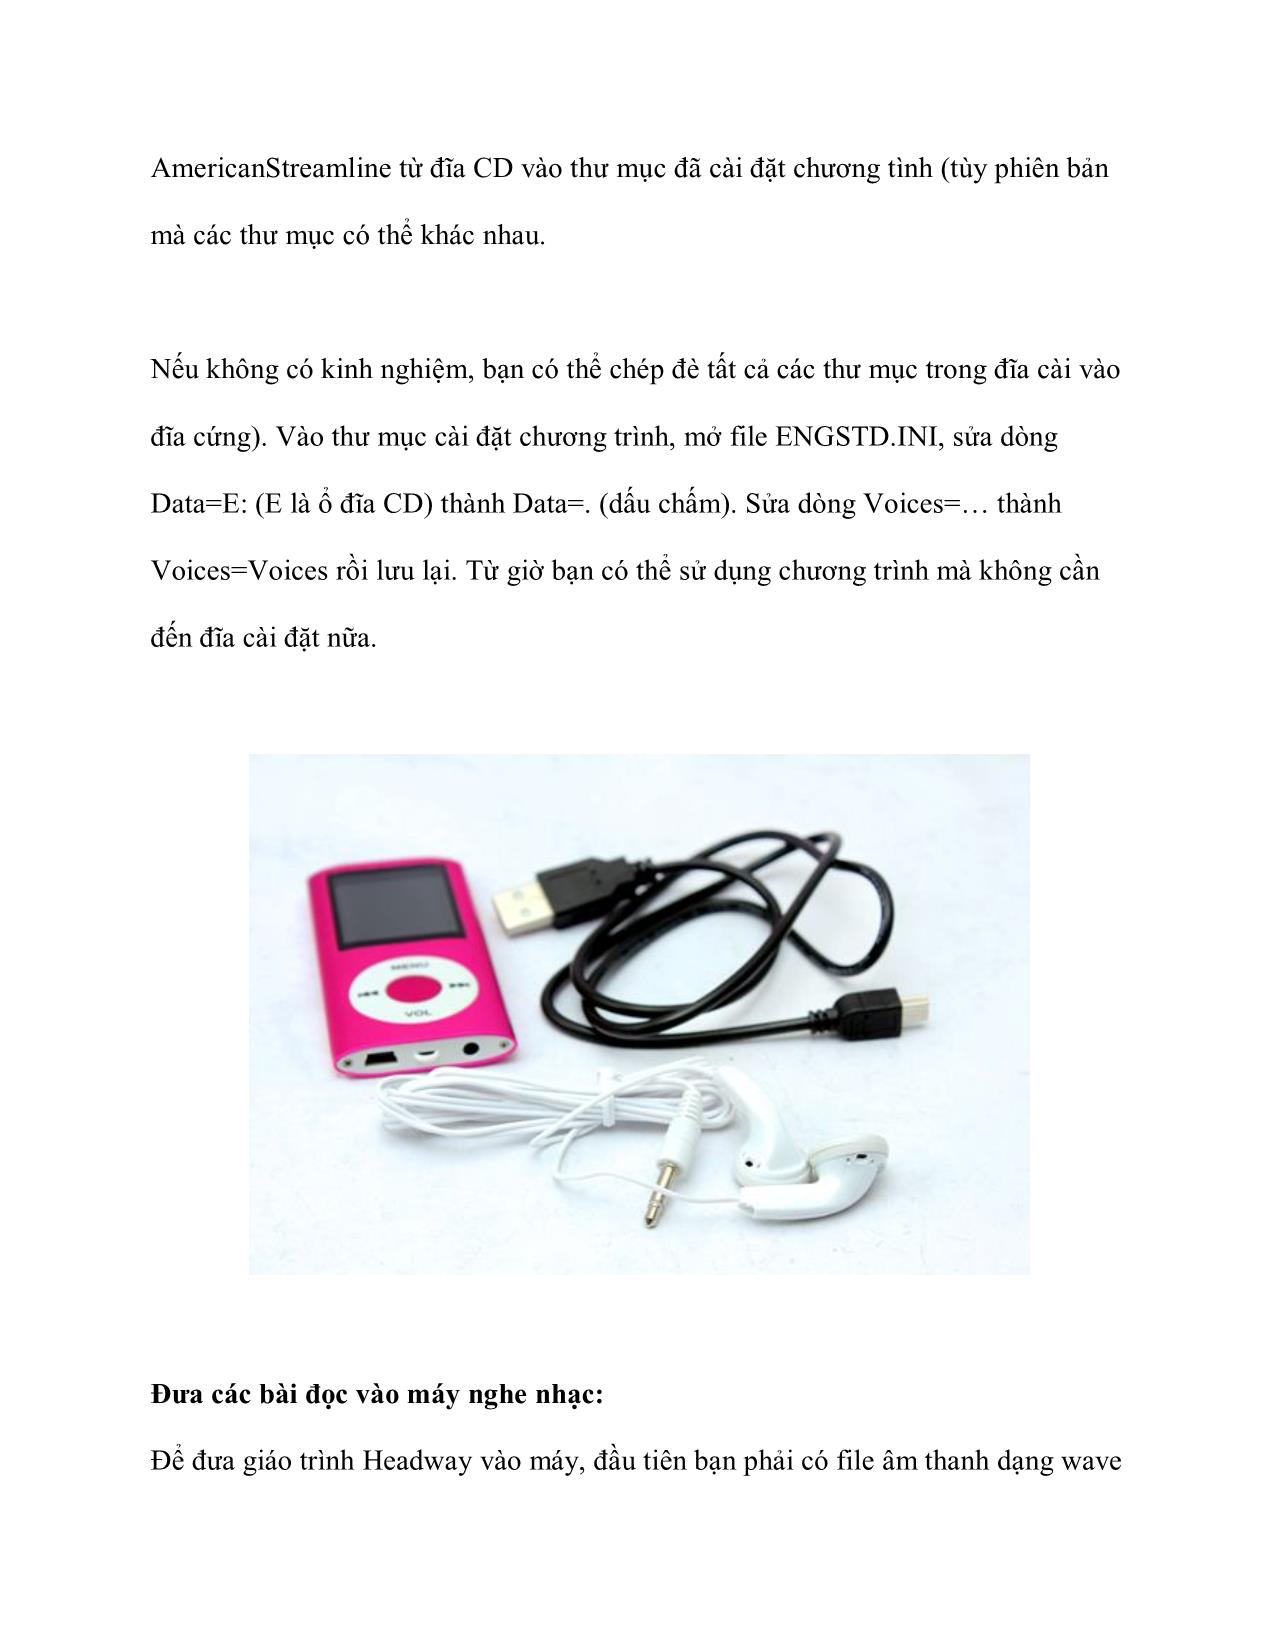 Luyện nghe tiếng Anh bằng máy nghe nhạc MP3 trang 6